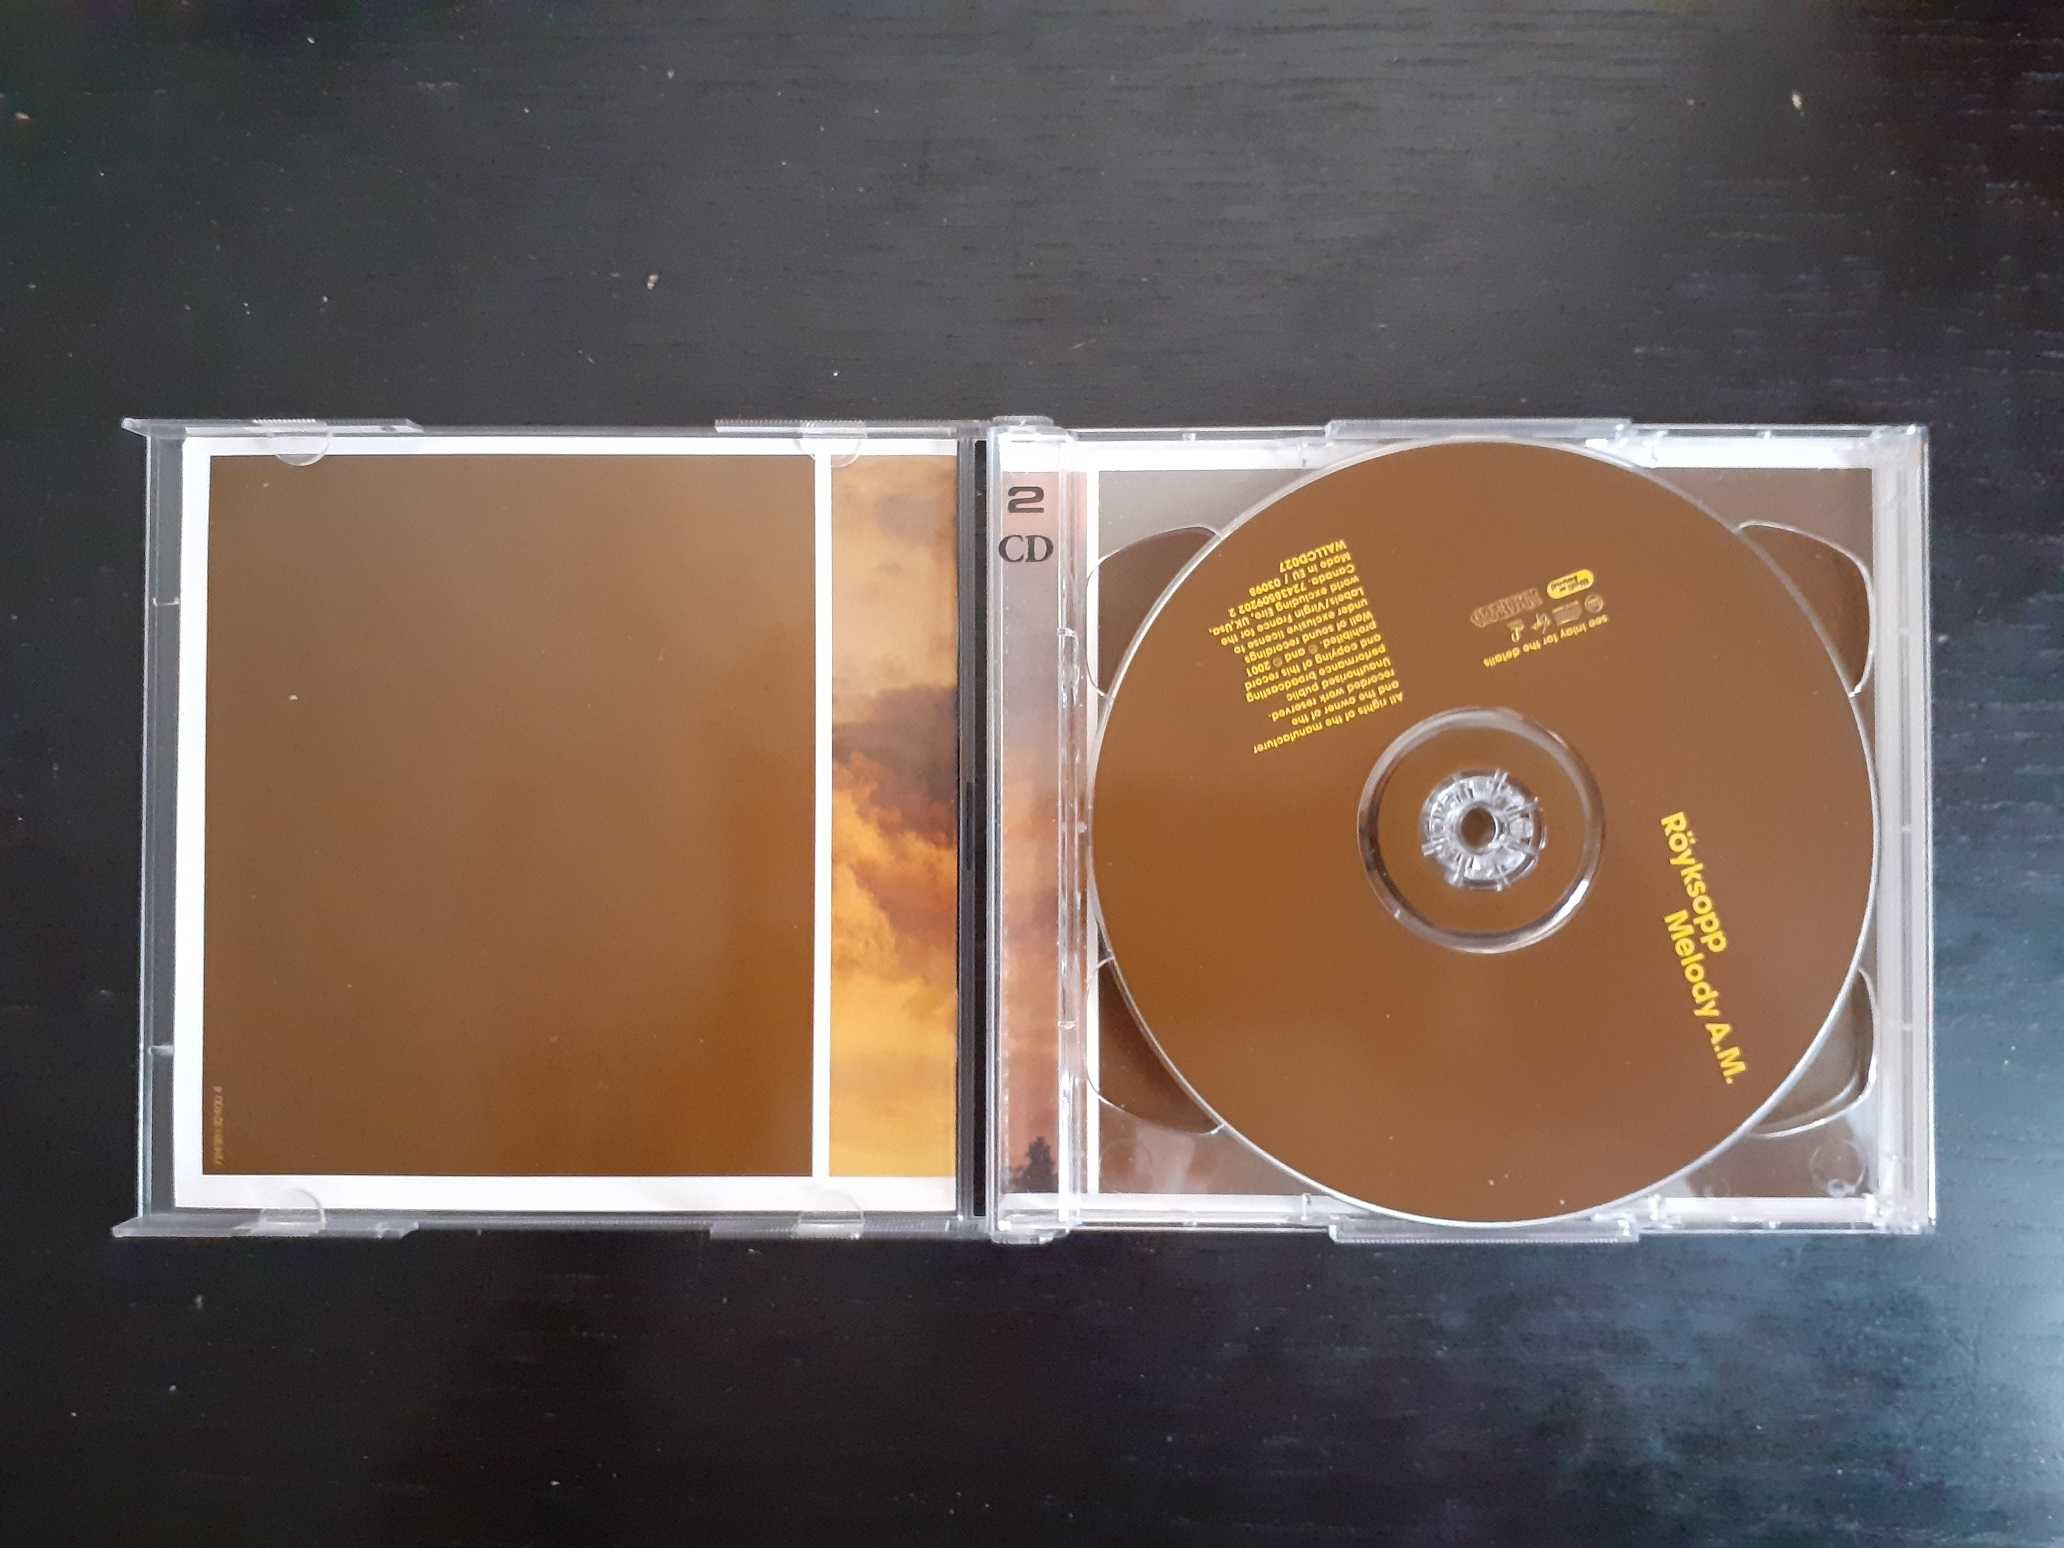 CD duplo edição especial Royksopp Melody A.M. (eletrónica/dance)